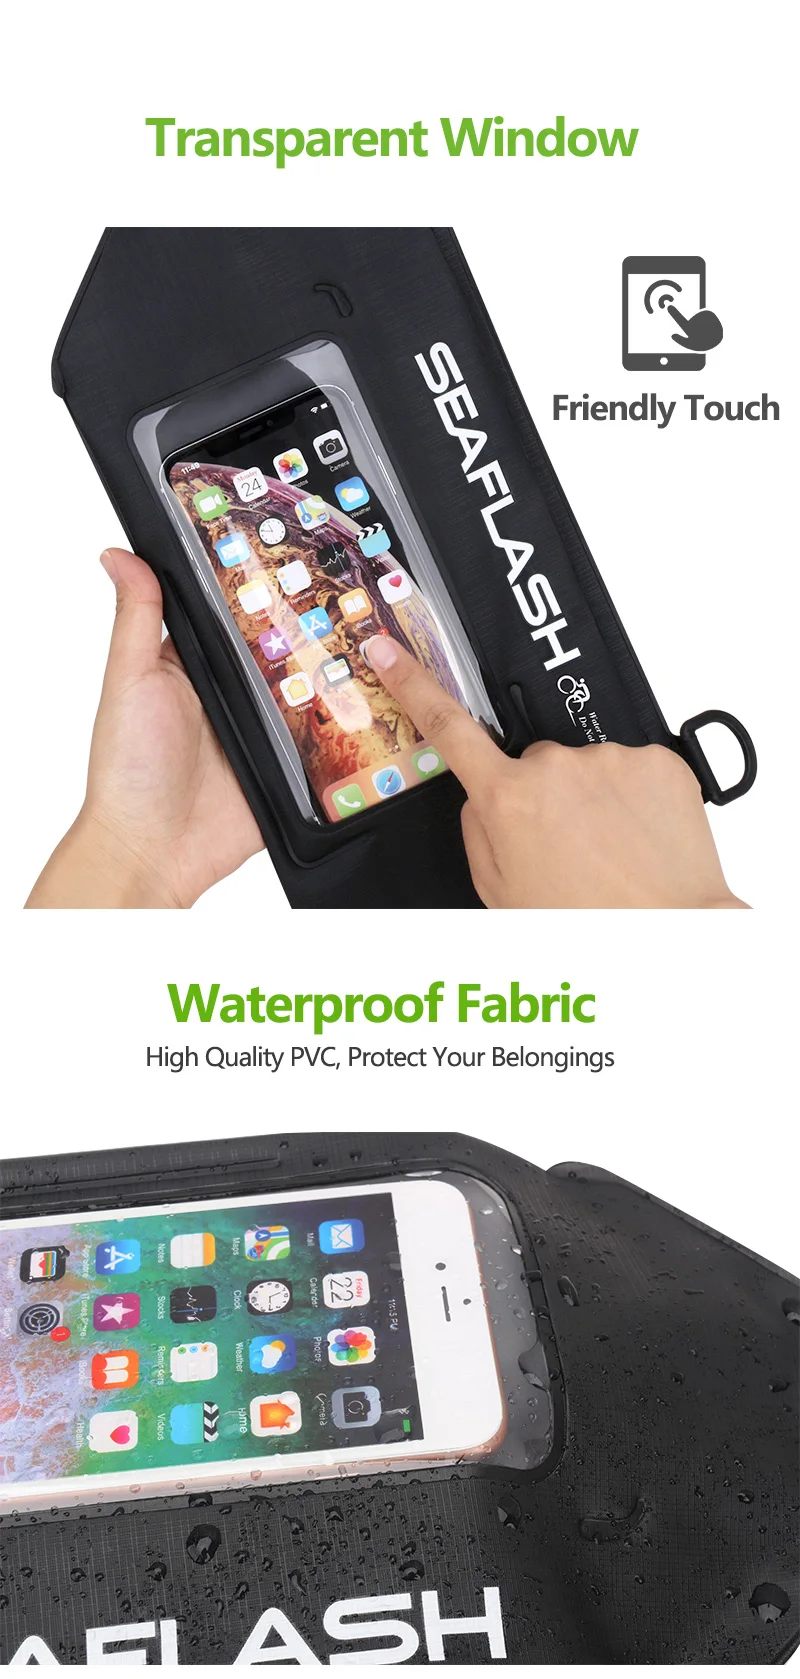 2019 New Design Waterproof Sling Bag Crossbody Shoulder Pack for Outdoor Cycling PVC Shoulder Bag